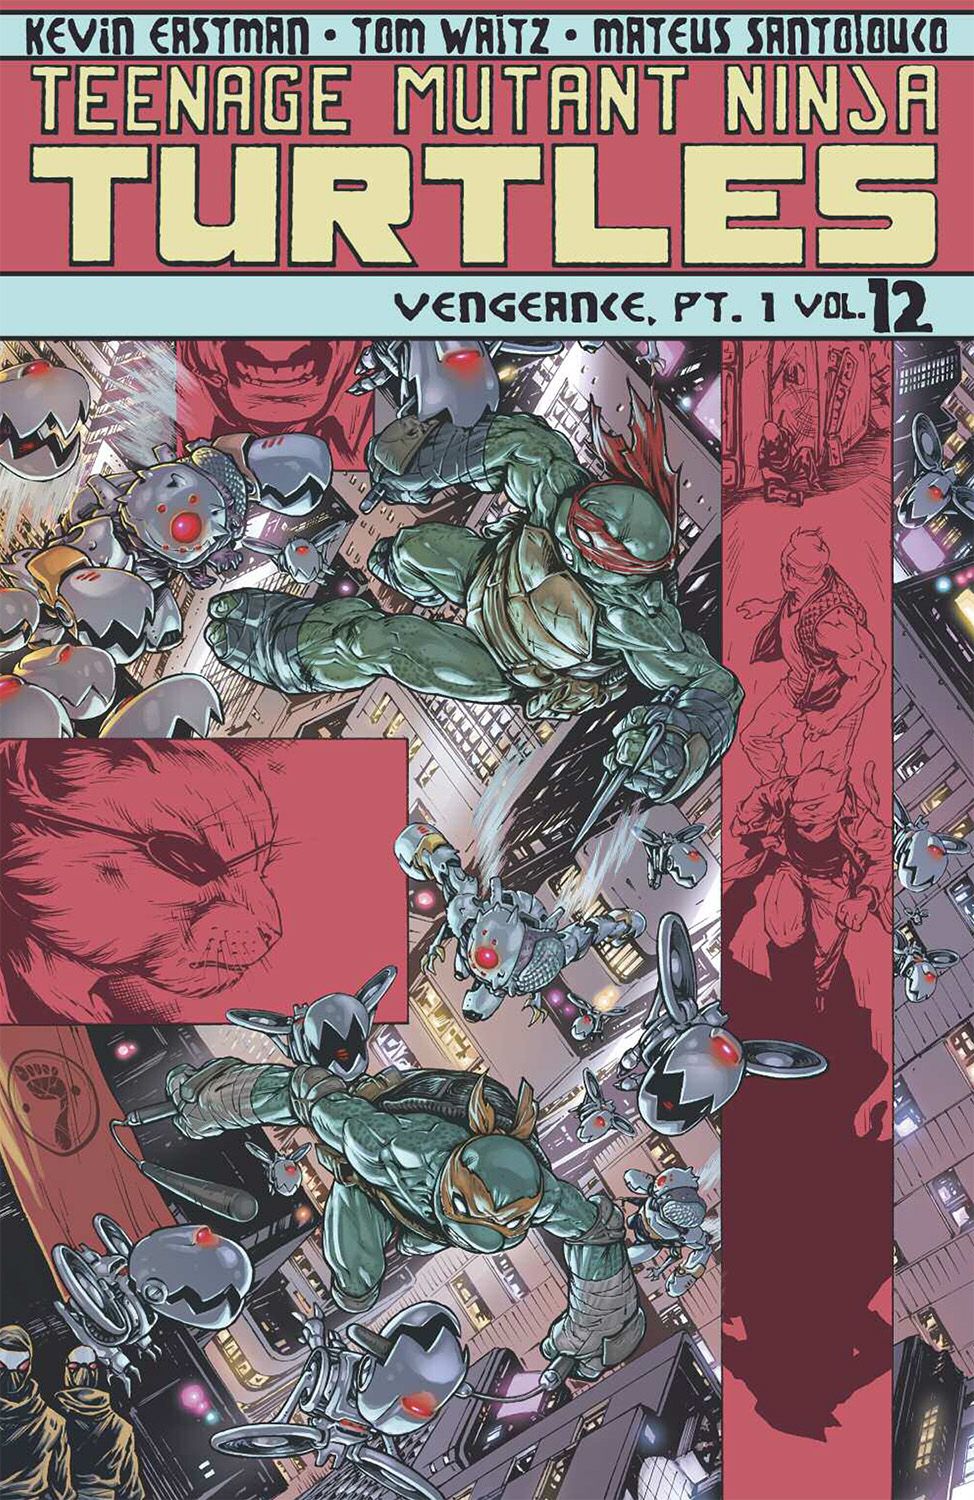 Teenage Mutant Ninja Turtles Ongoing TP VOL 12 Vengeance Pt 1